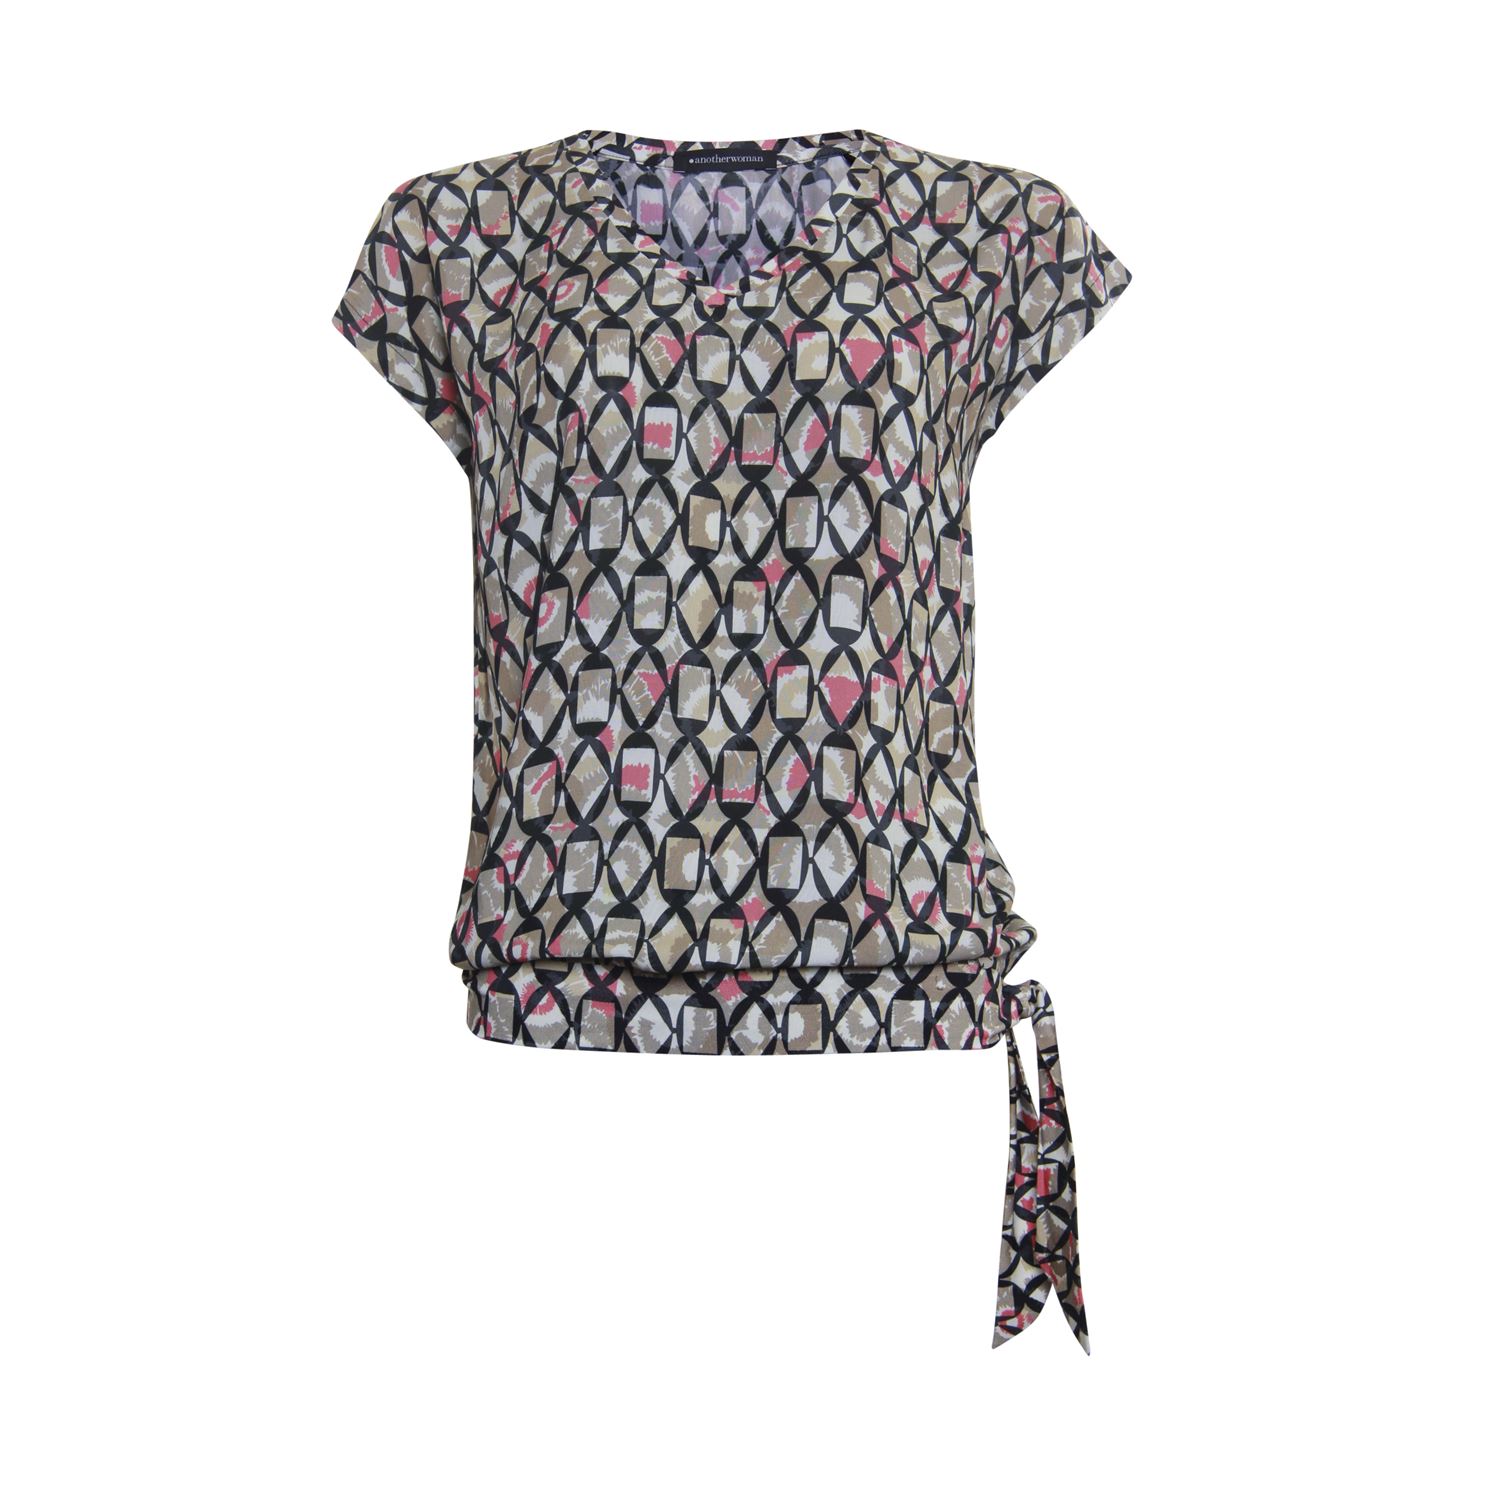 zwaarlijvigheid bijtend Zending Anotherwoman T-shirt met strik - Shop Anotherwoman dameskleding online